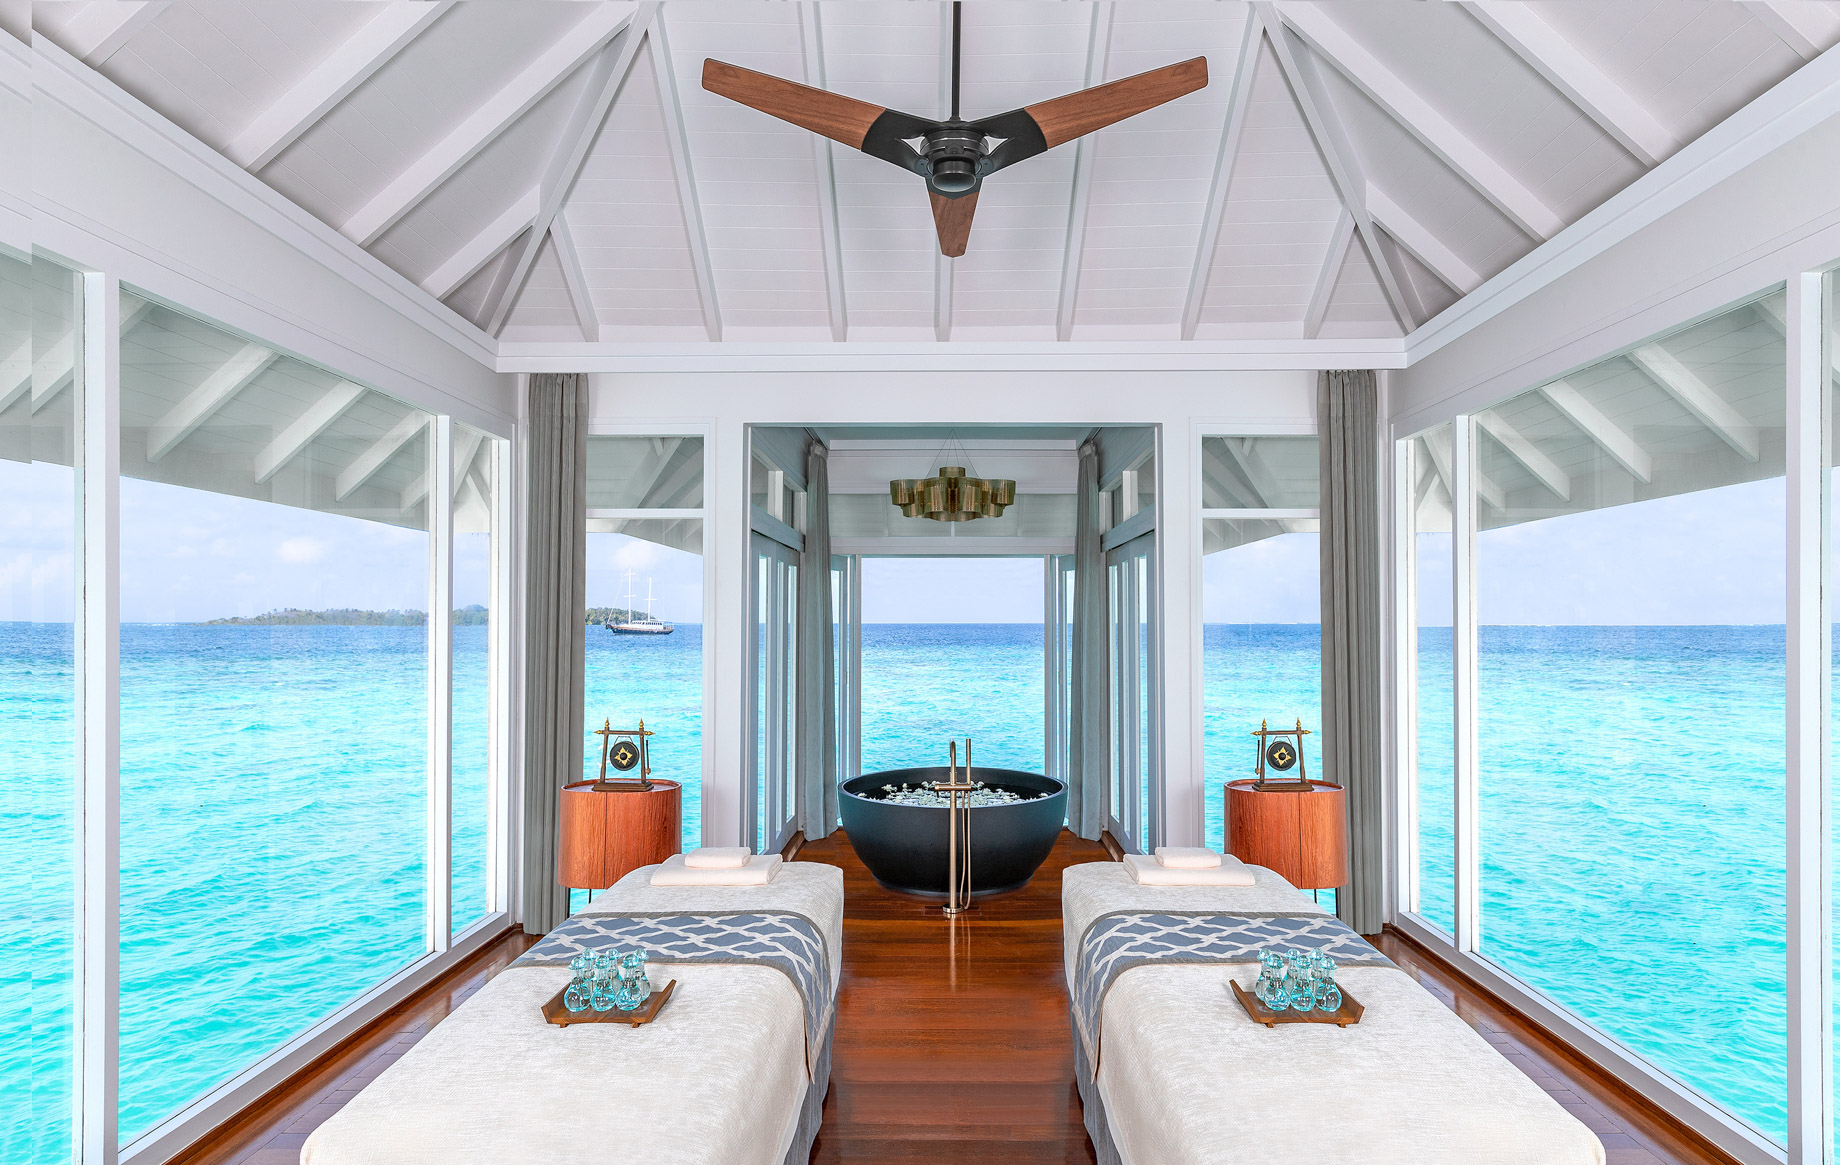 Anantara Kihavah Maldives Villas Resort – Baa Atoll, Maldives – Spa Treatment Room